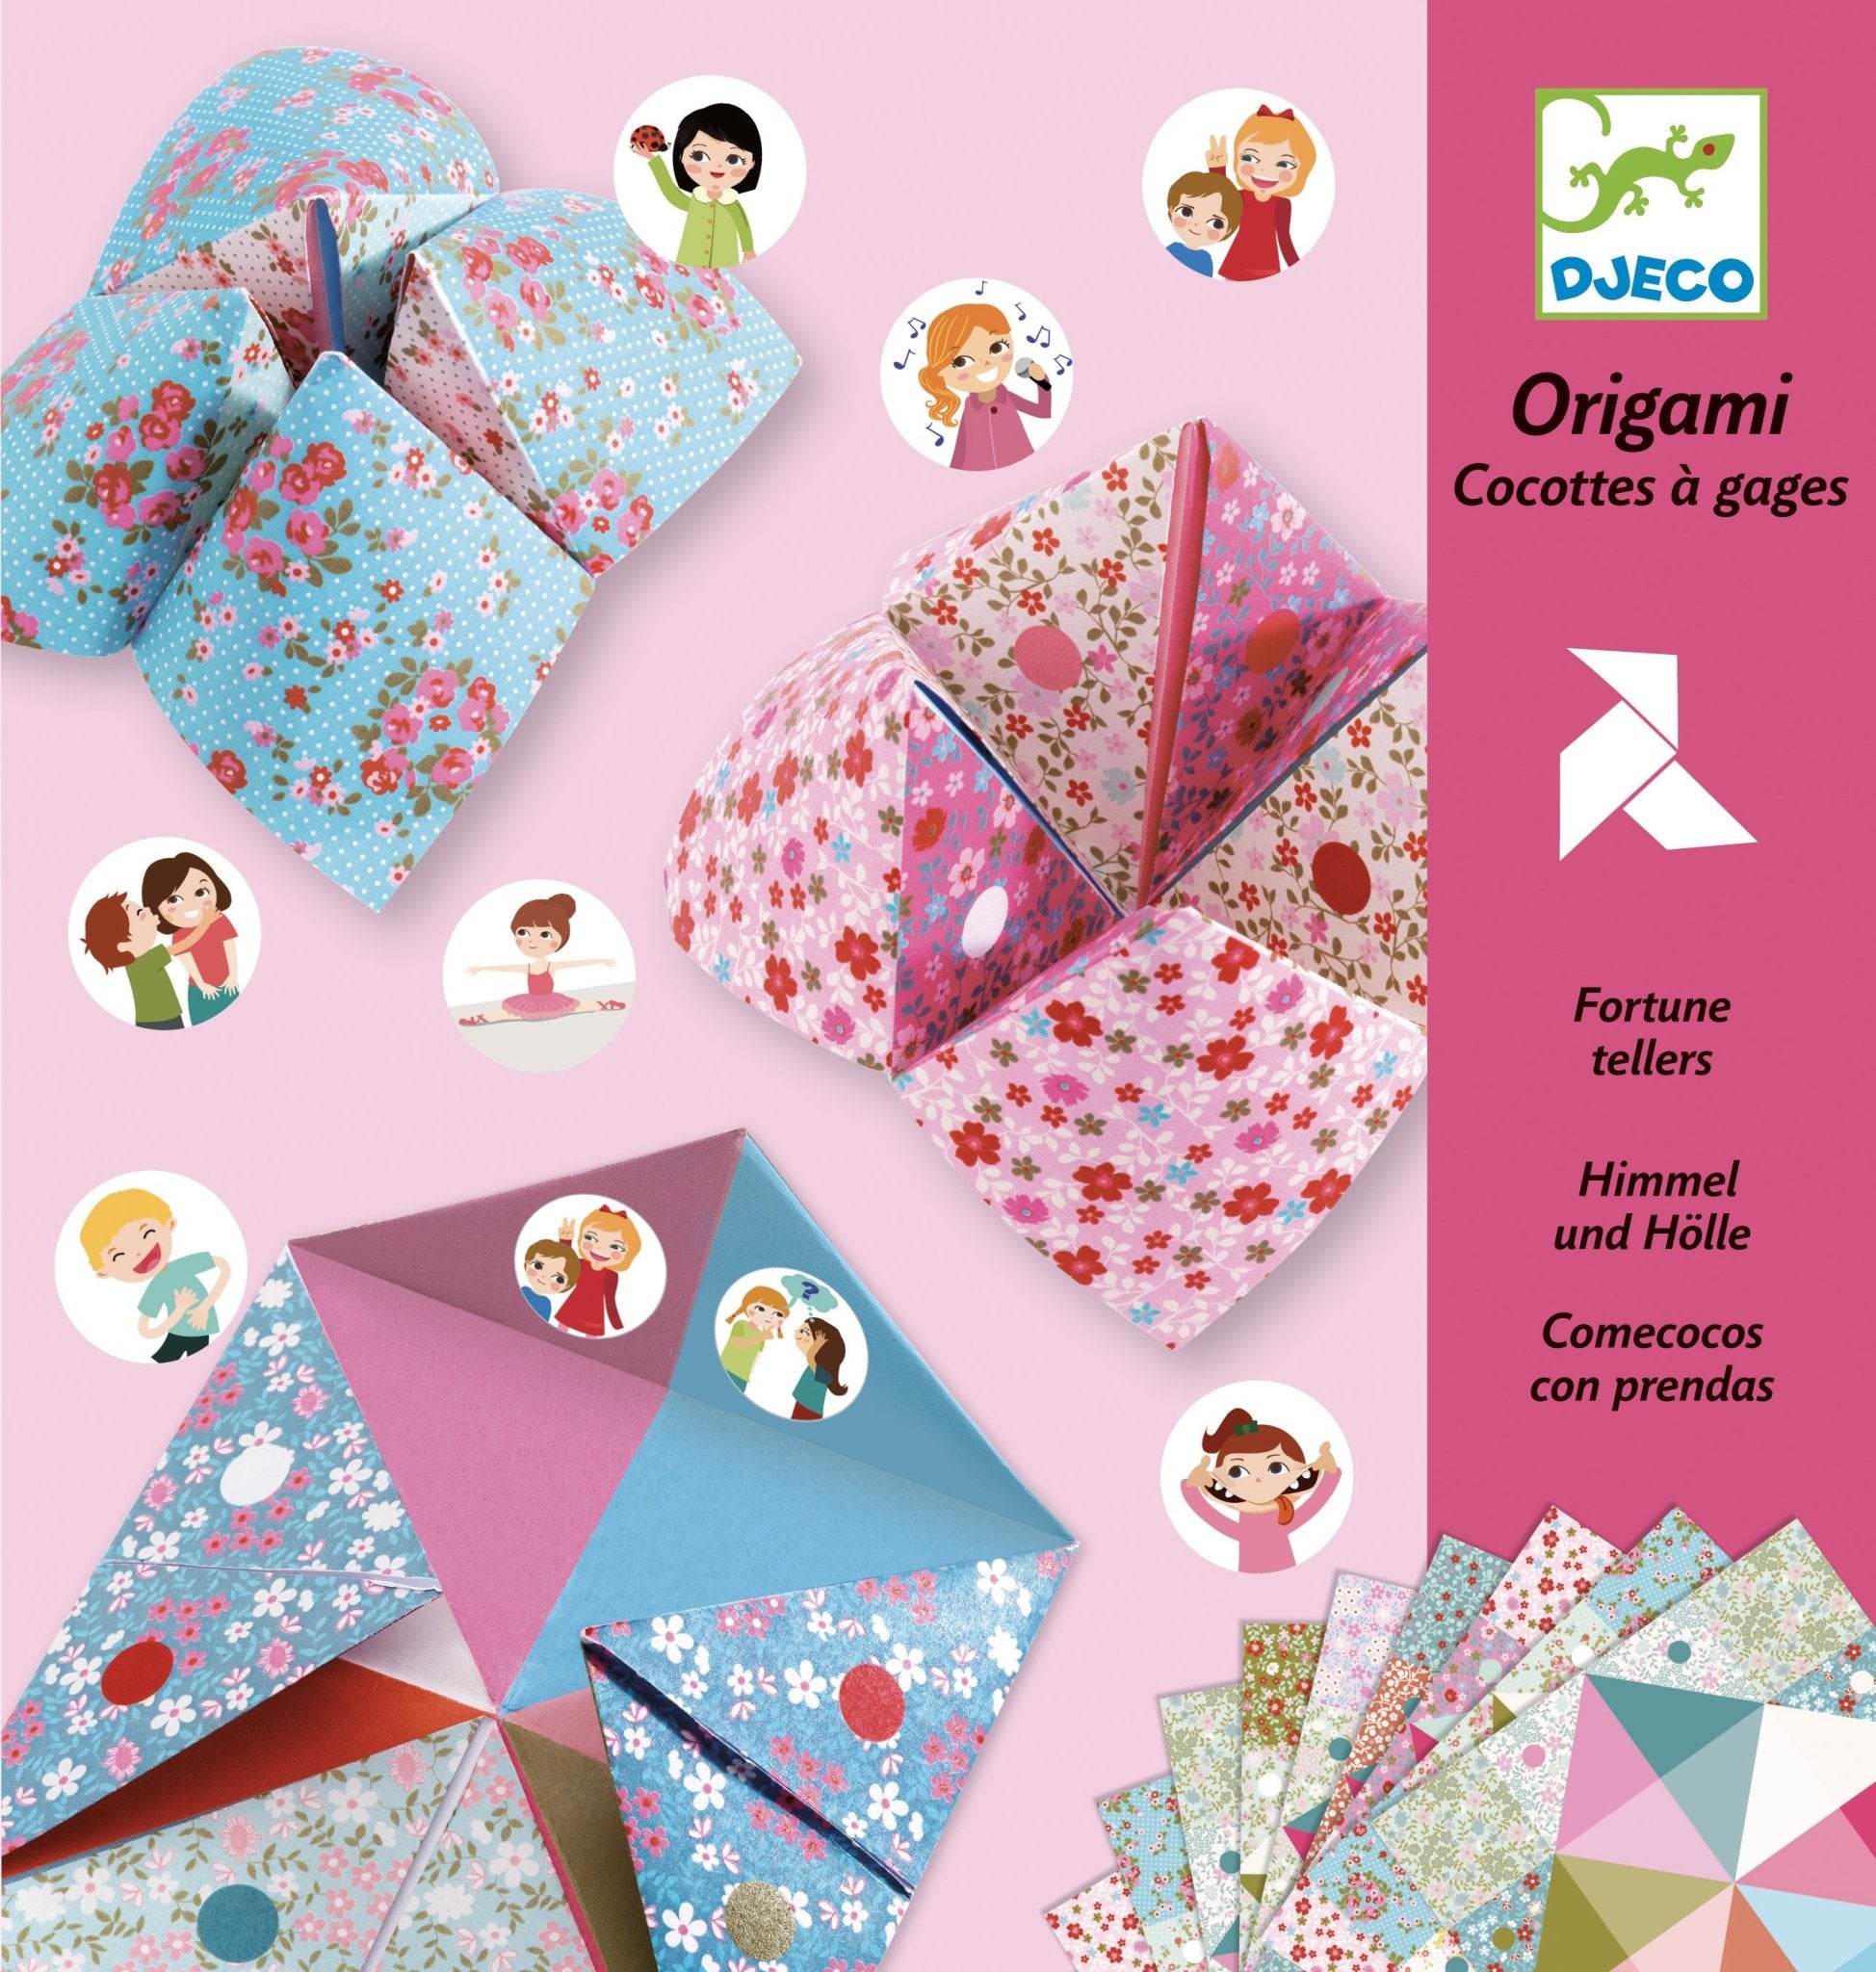 Papiroflexia origami de flores Djeco-Djeco-PetitGegant